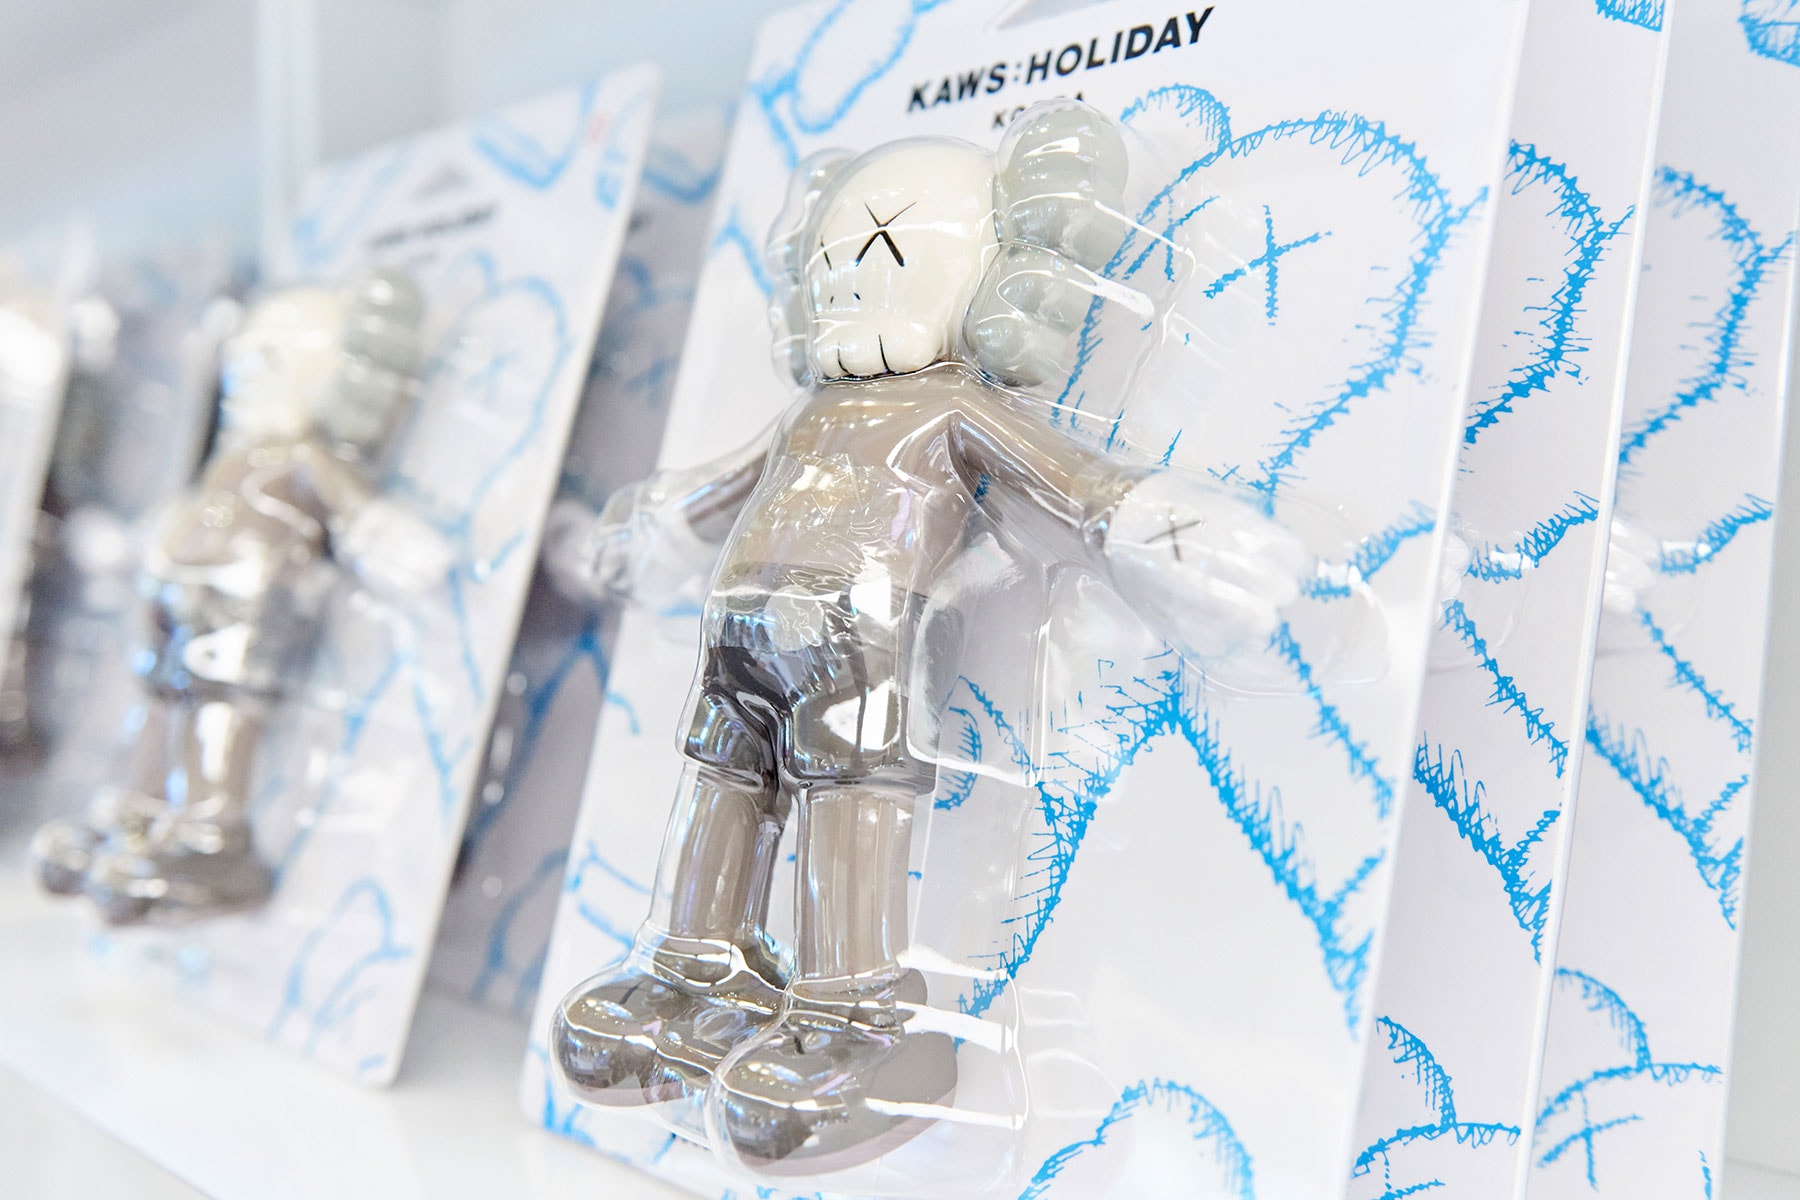 直擊 KAWS 水上漂浮雕塑作品「KAWS:HOLIDAY」期間限定店開幕盛況